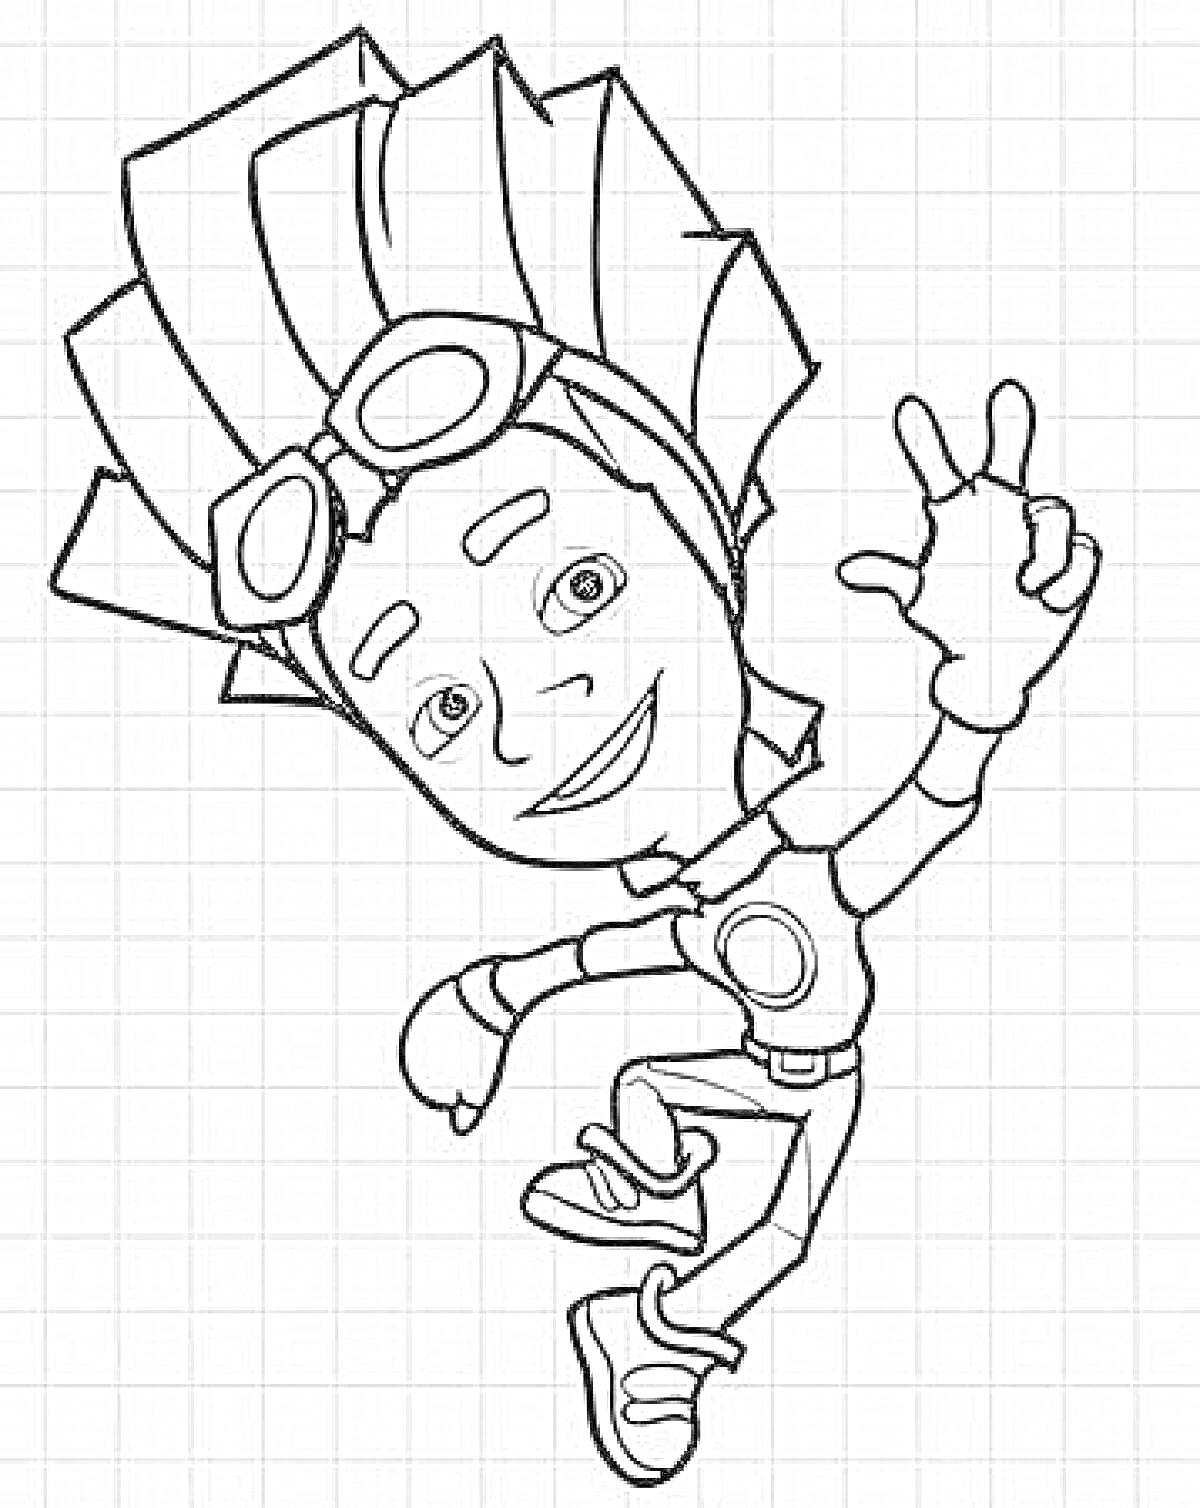 Раскраска Техник фиксиков Файер в прыжке, с поднятой рукой, в очках и с прической в виде языков пламени